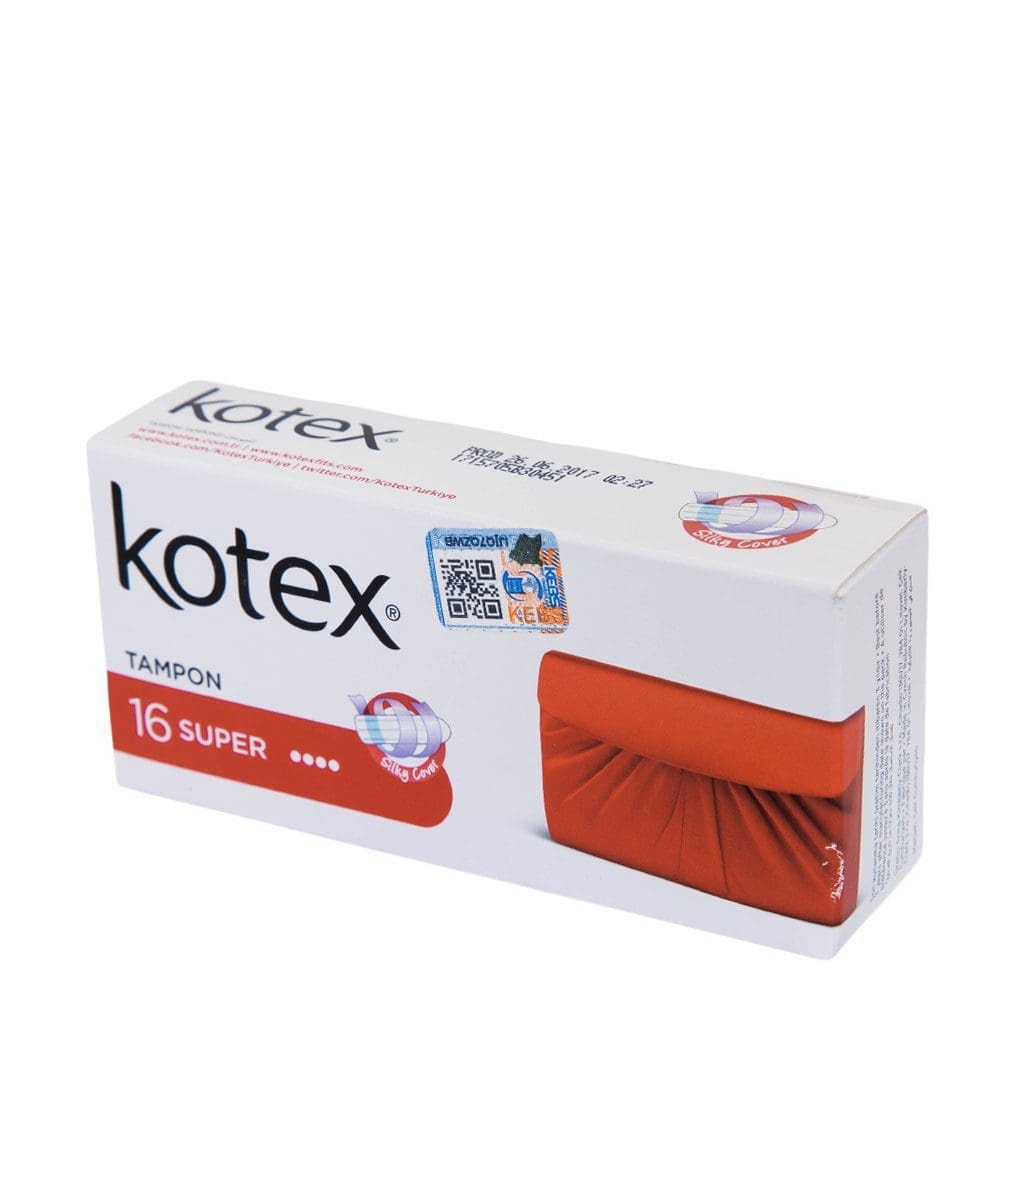 Kotex Tampons Super 16S - Kenya